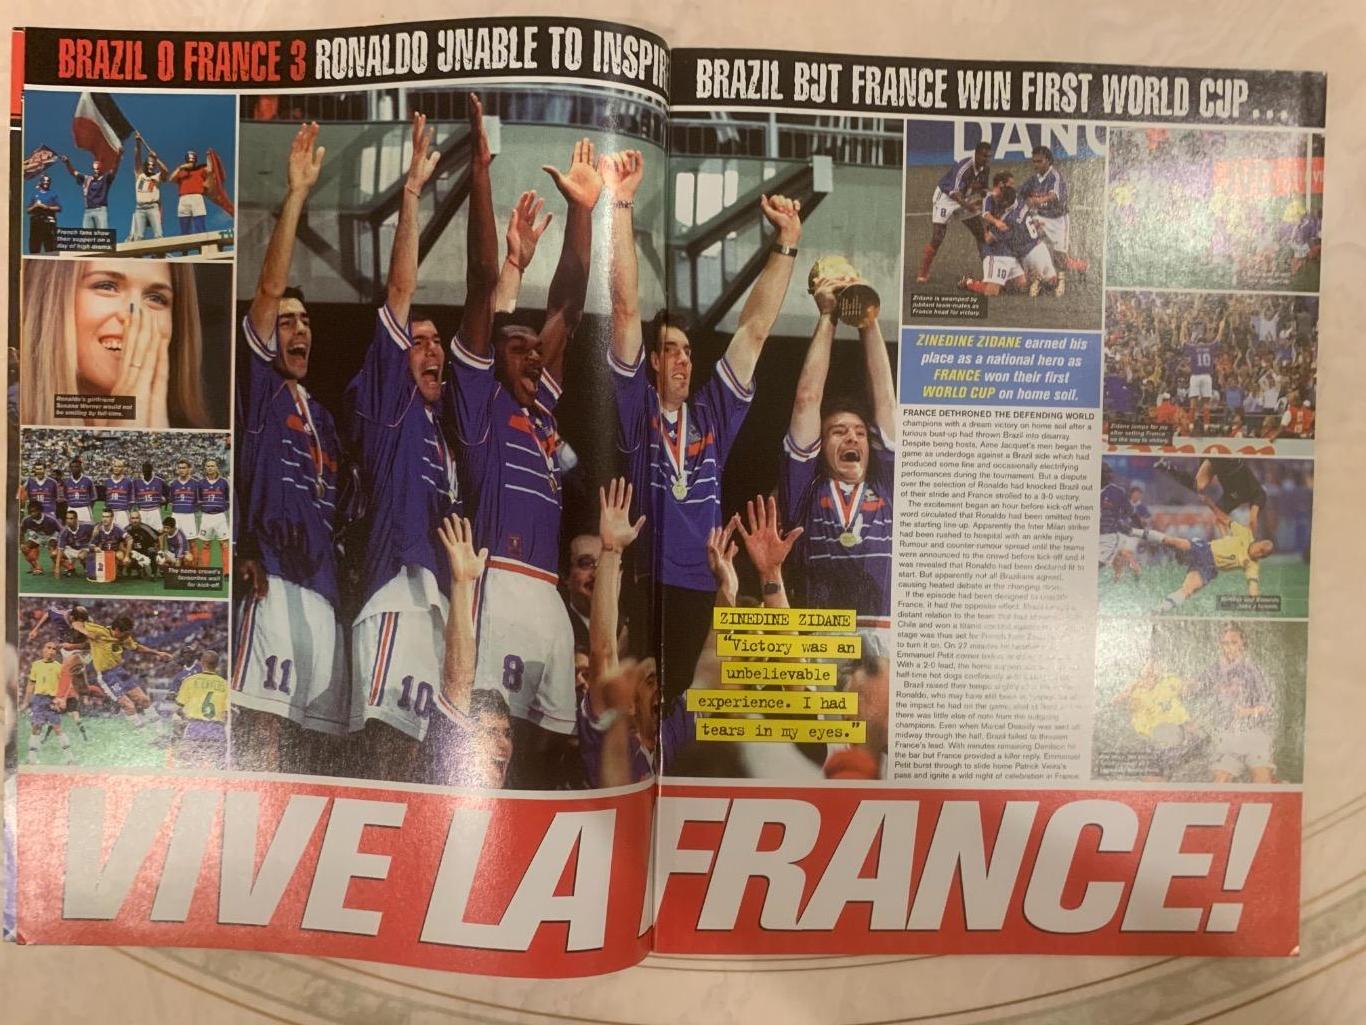 Match чемпионат мира 98- Франция 7